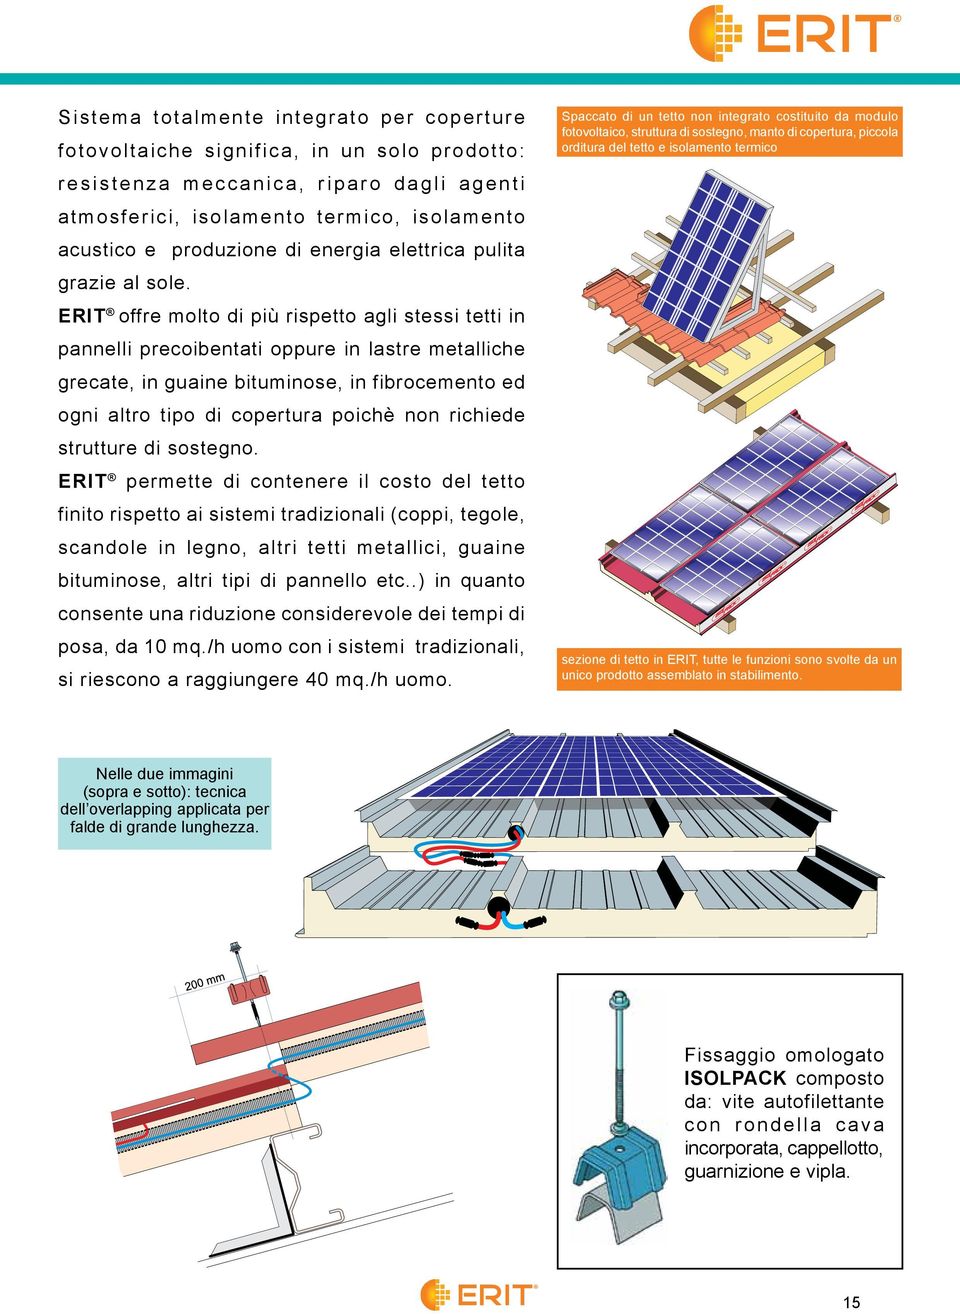 ERIT offre molto di più rispetto agli stessi tetti in pannelli precoibentati oppure in lastre metalliche grecate, in guaine bituminose, in fibrocemento ed ogni altro tipo di copertura poichè non